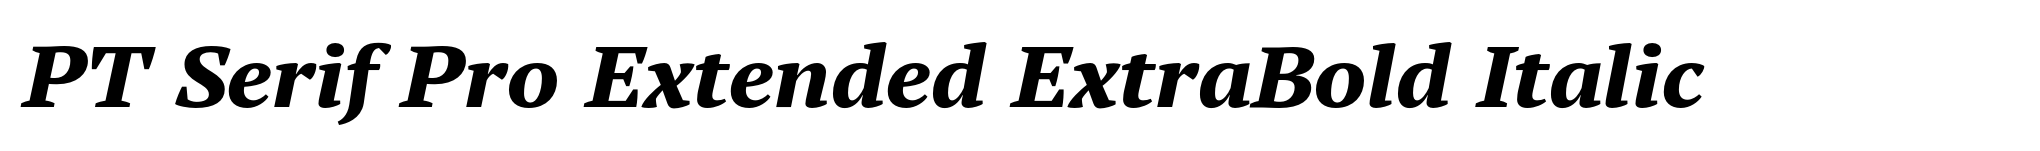 PT Serif Pro Extended ExtraBold Italic image